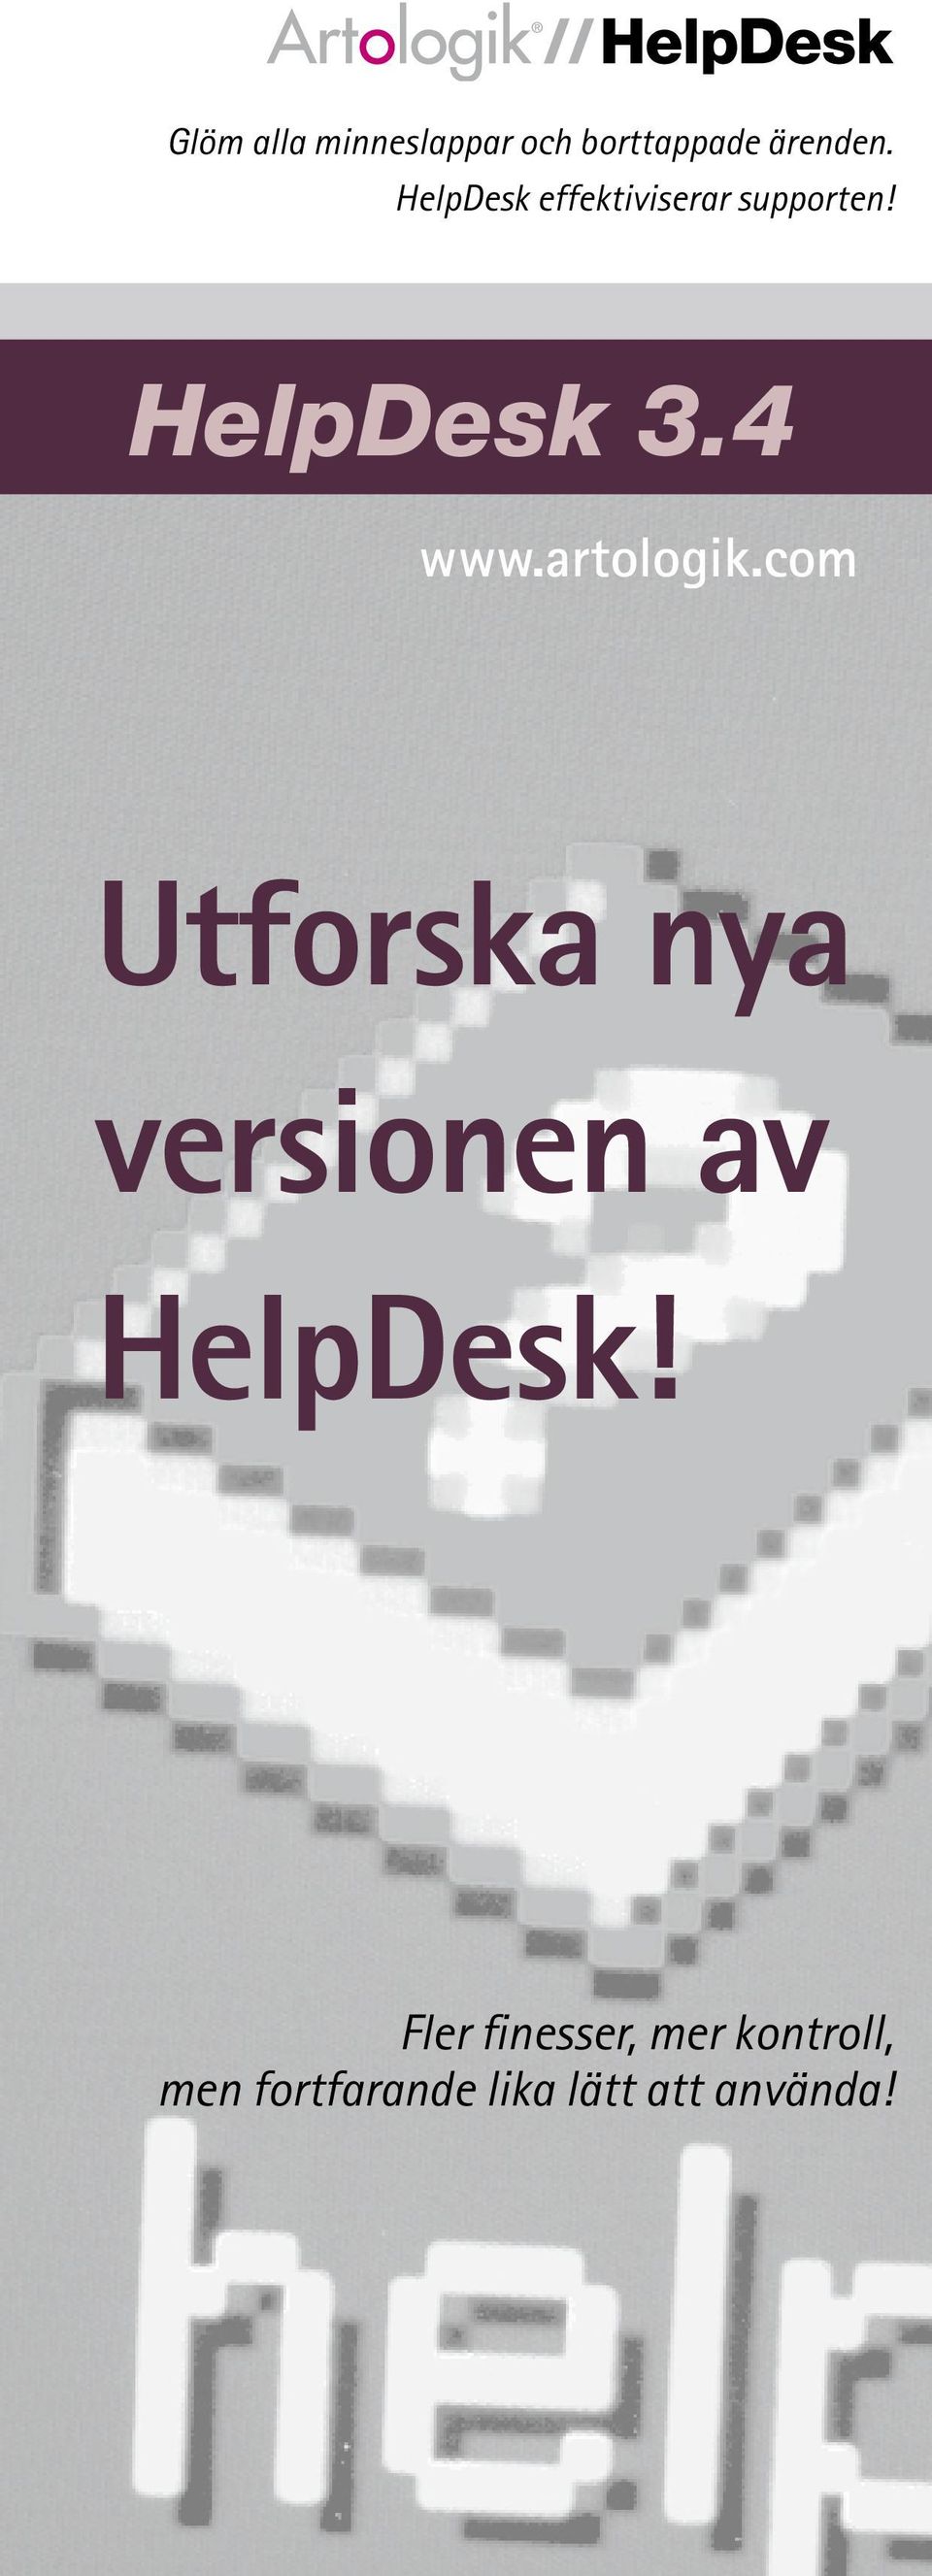 artologik.com Utforska nya versionen av HelpDesk!